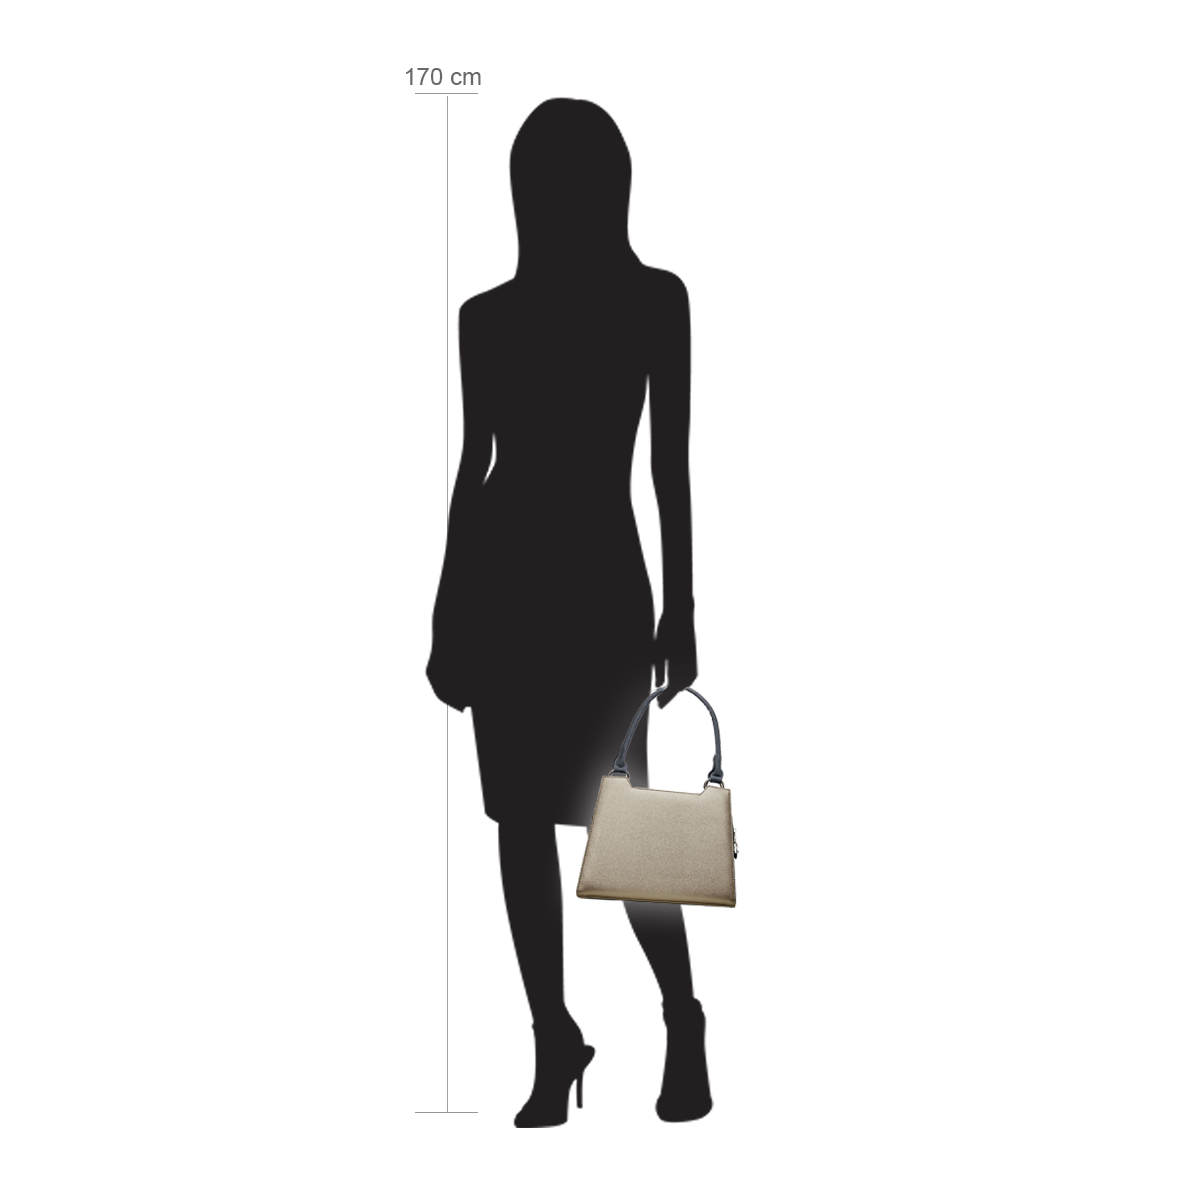 Modellpuppe 170 cm groß zeigt die Handtaschengröße an der Person Modell:Yukon